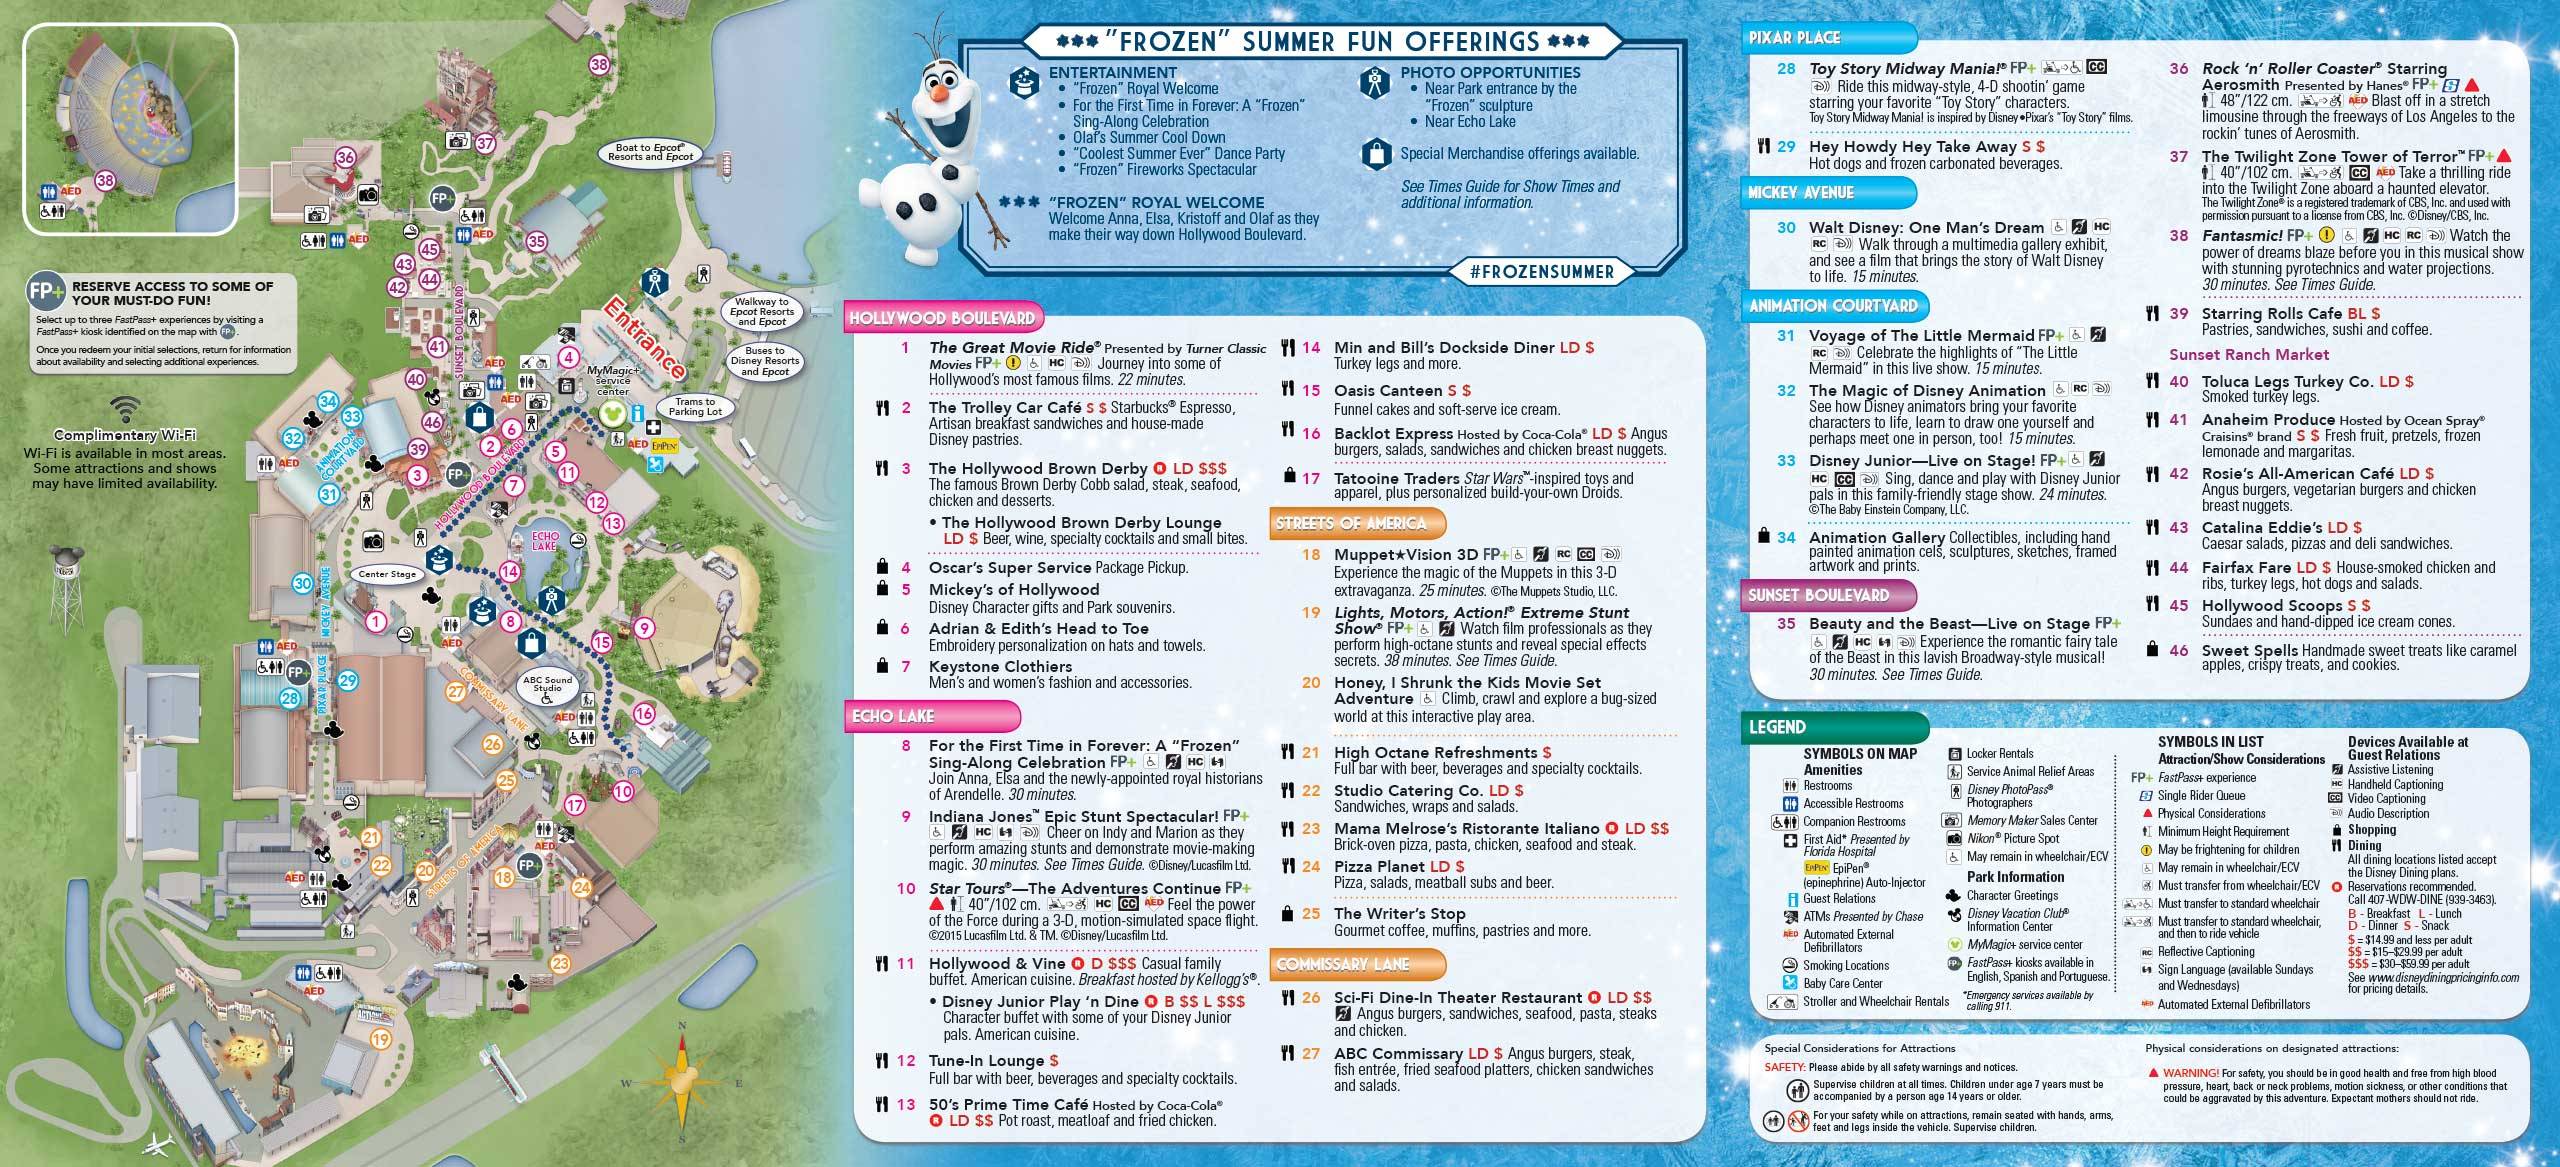 2015 Frozen Summer Fun Guide Map - Back